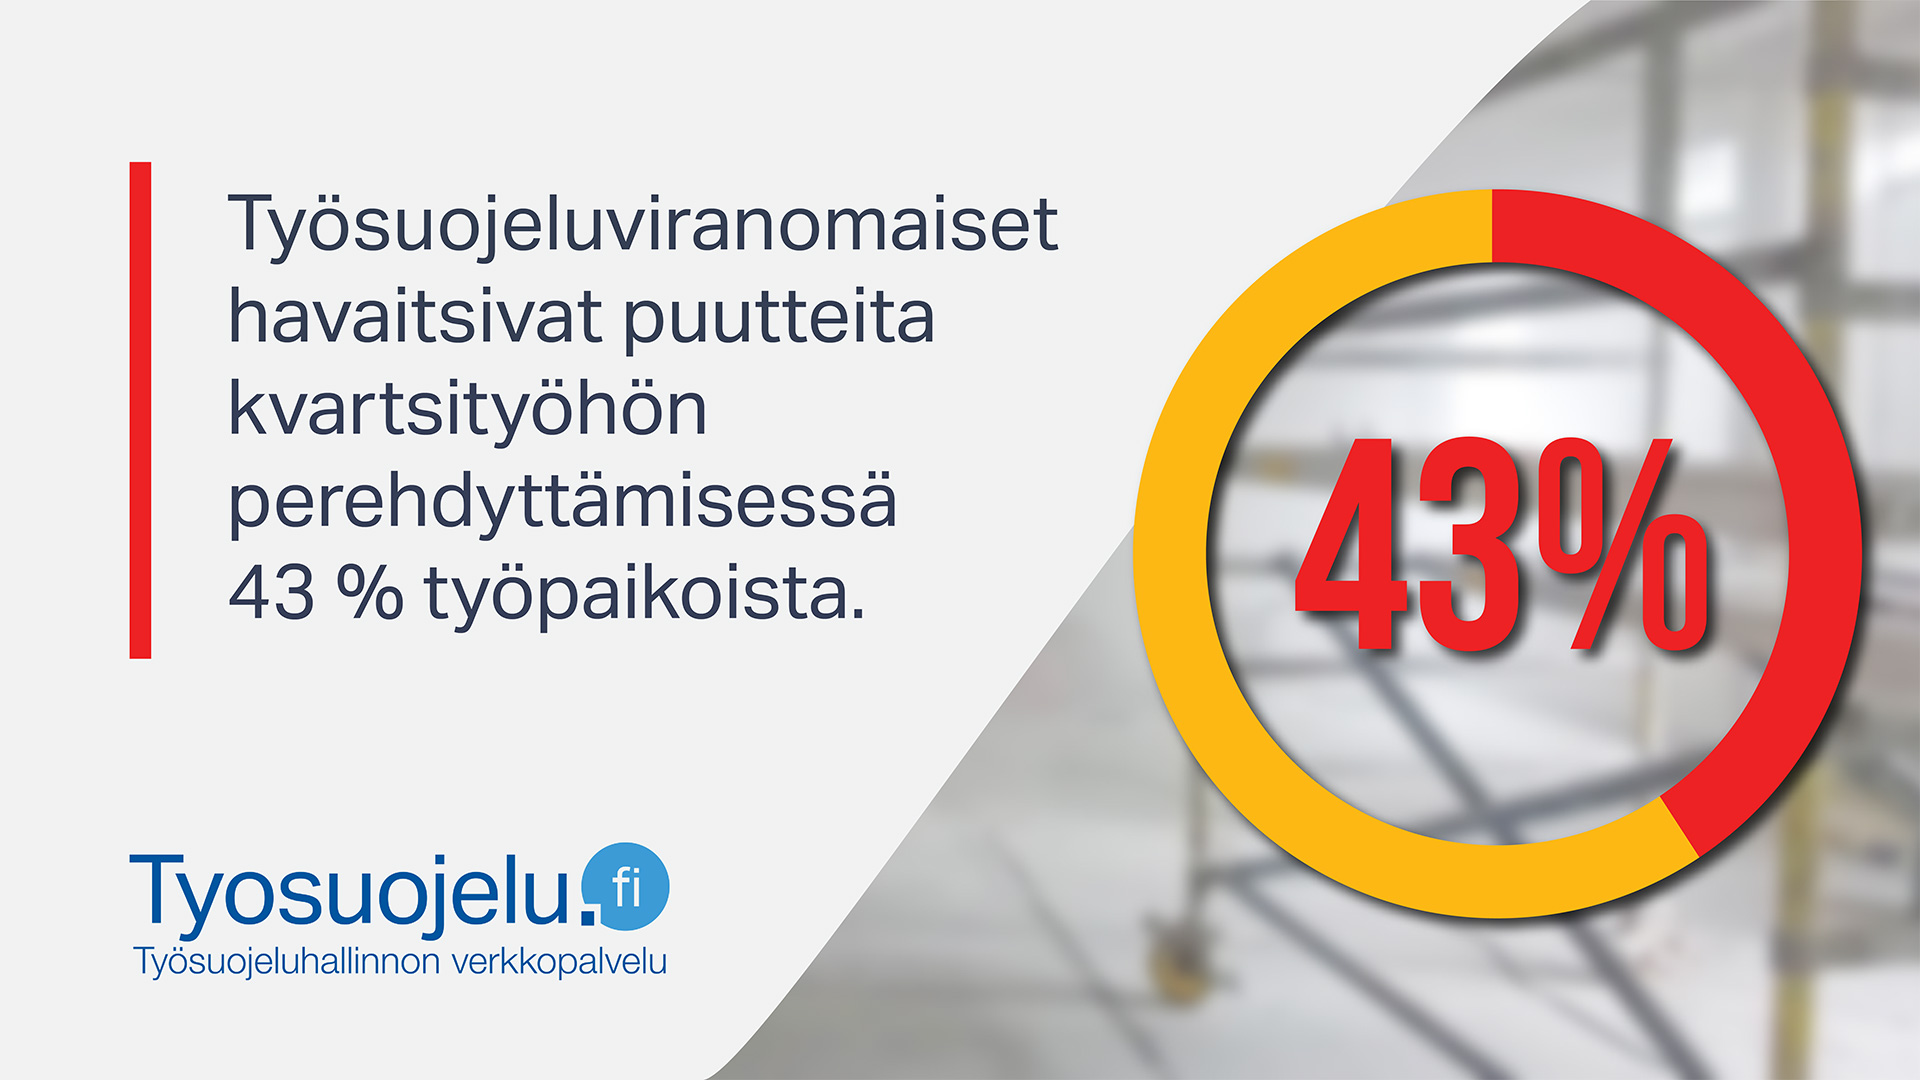 Työsuojeluviranomaiset havaitsivat puutteita kvartsityöhön perehdyttämisessä 43% työpaikoista. Tyosuojelu.fi-logo.